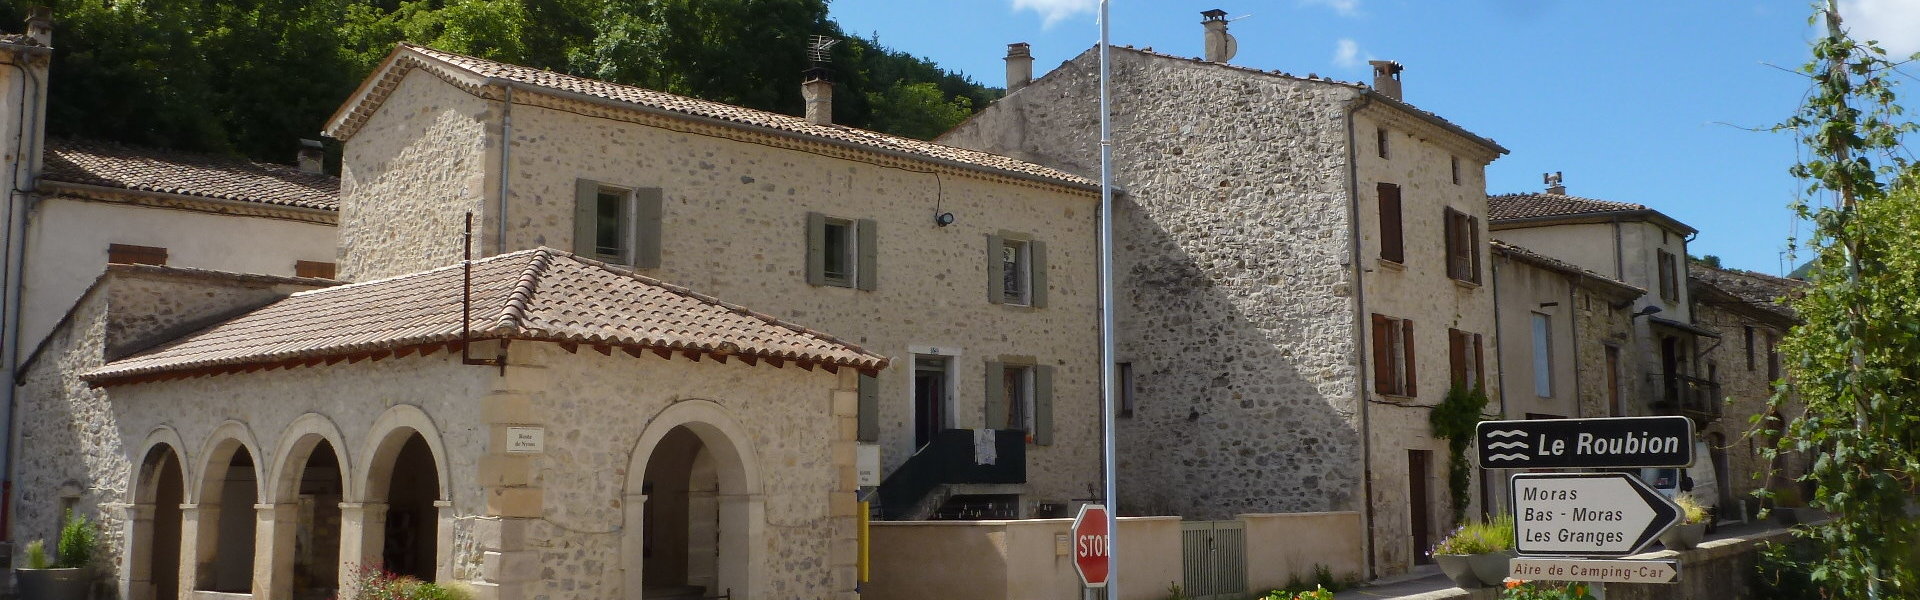 Les producteurs - Commune de Bouvières - Département de la Drôme